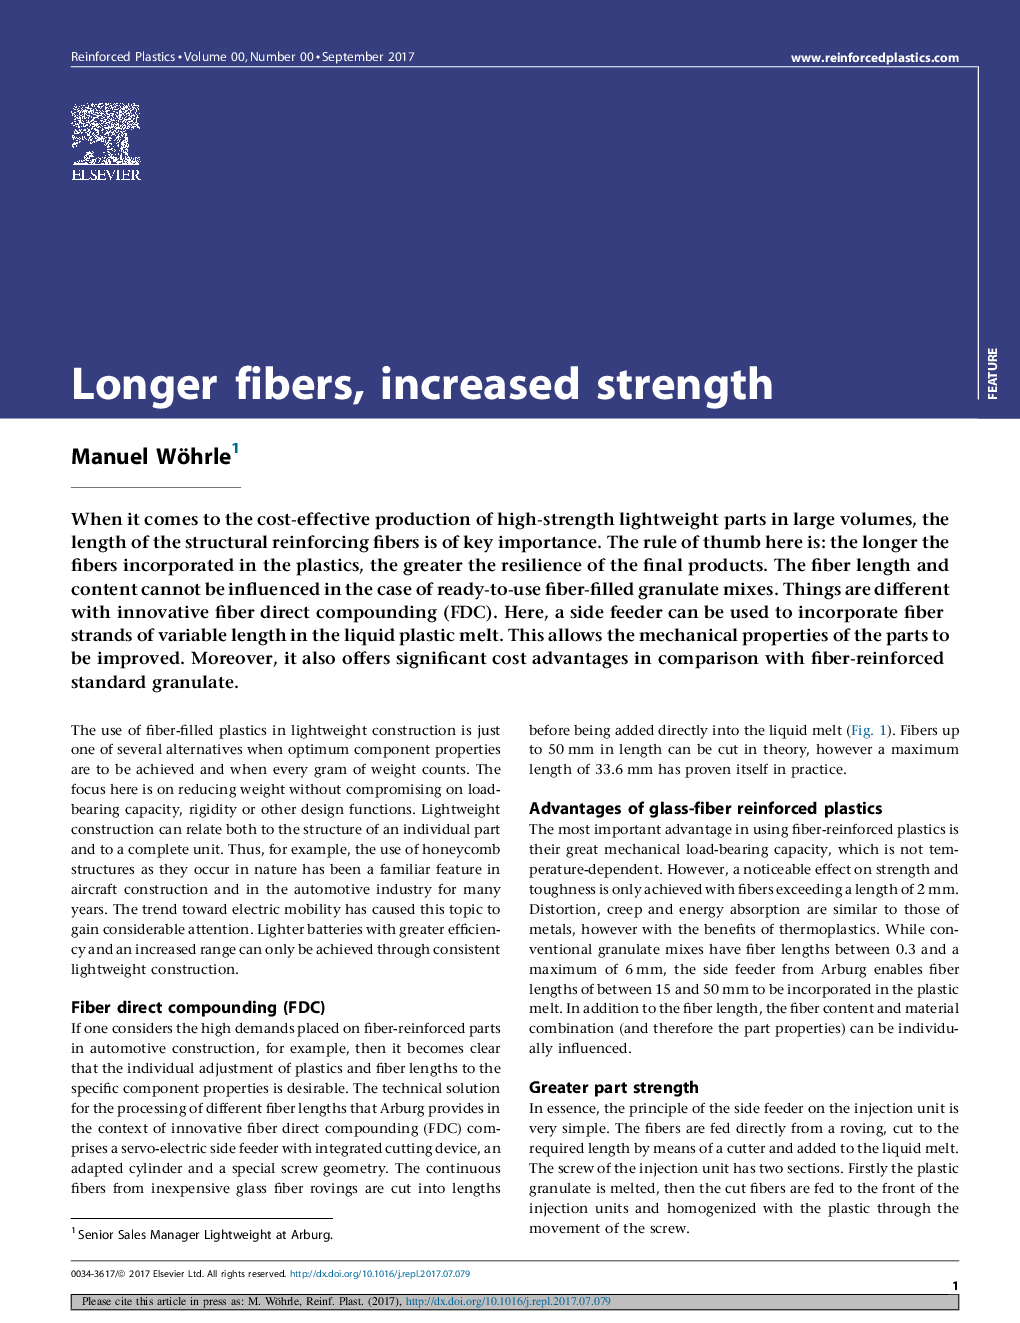 Longer fibers, increased strength